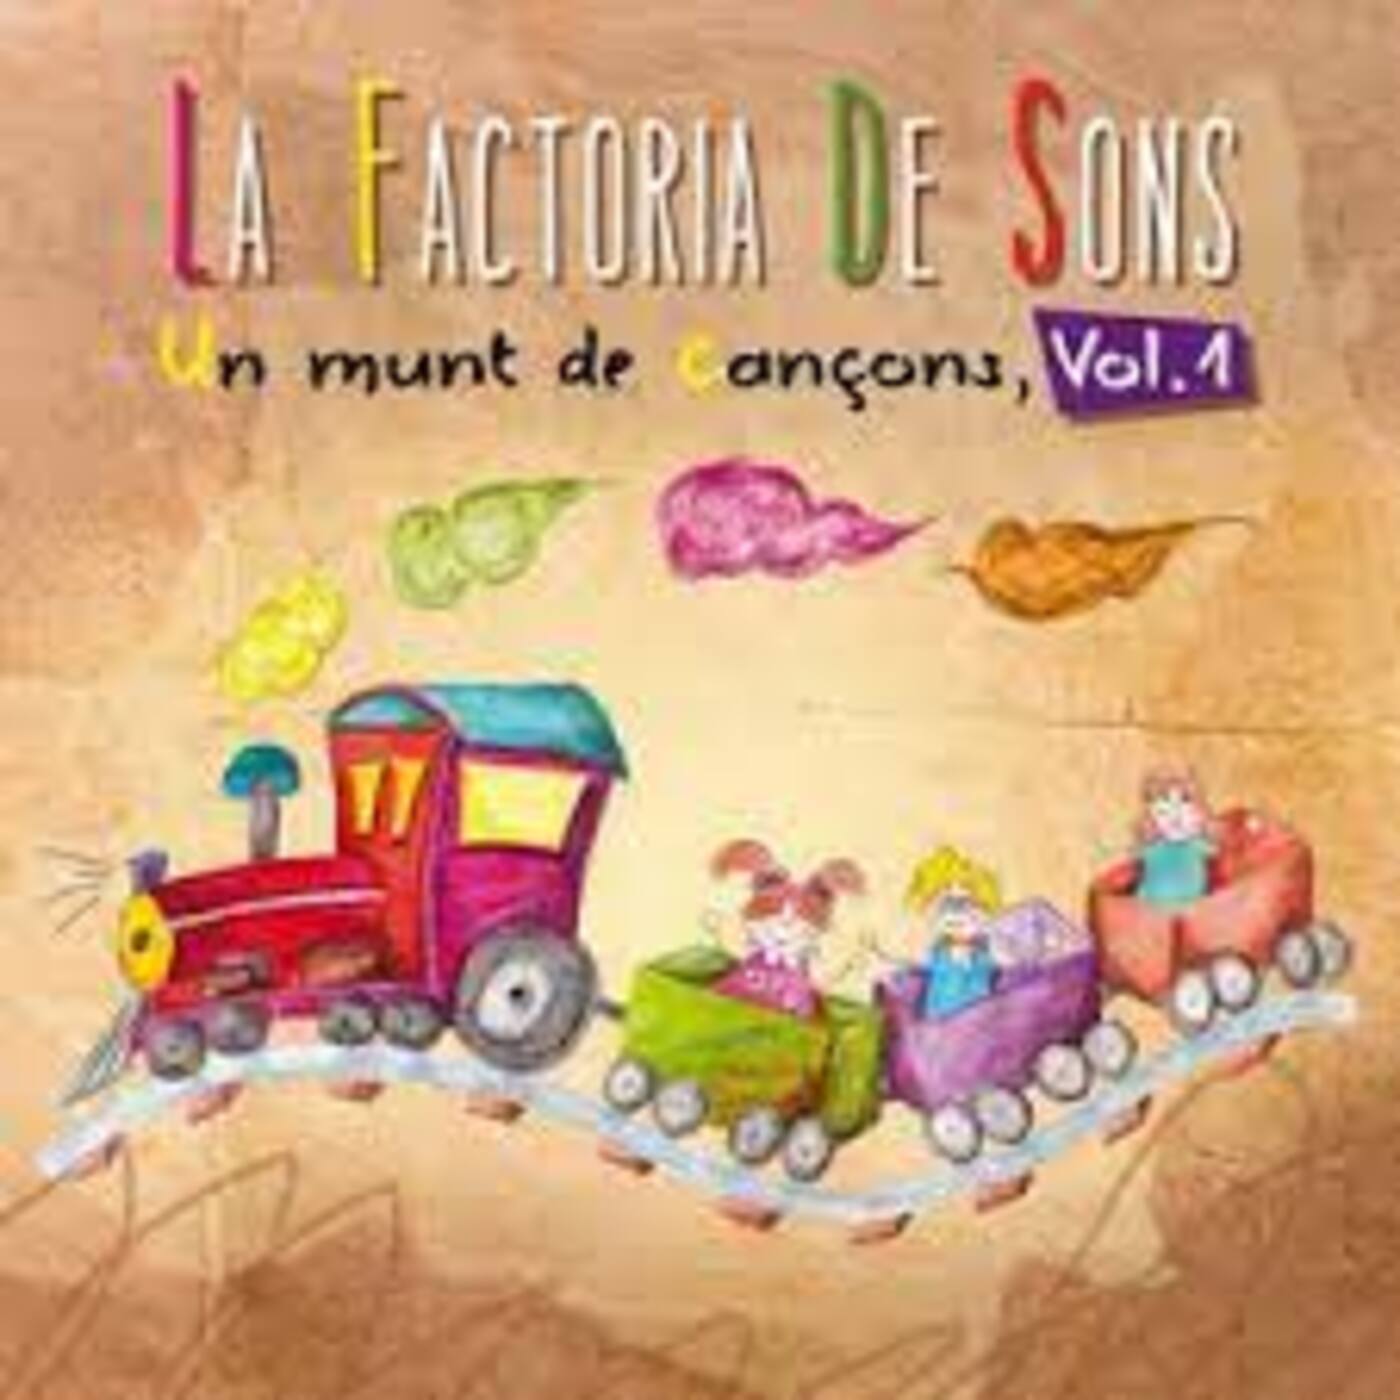 La Factoria de Sons - Un munt de cançons (Vol.1) | musica en valencià